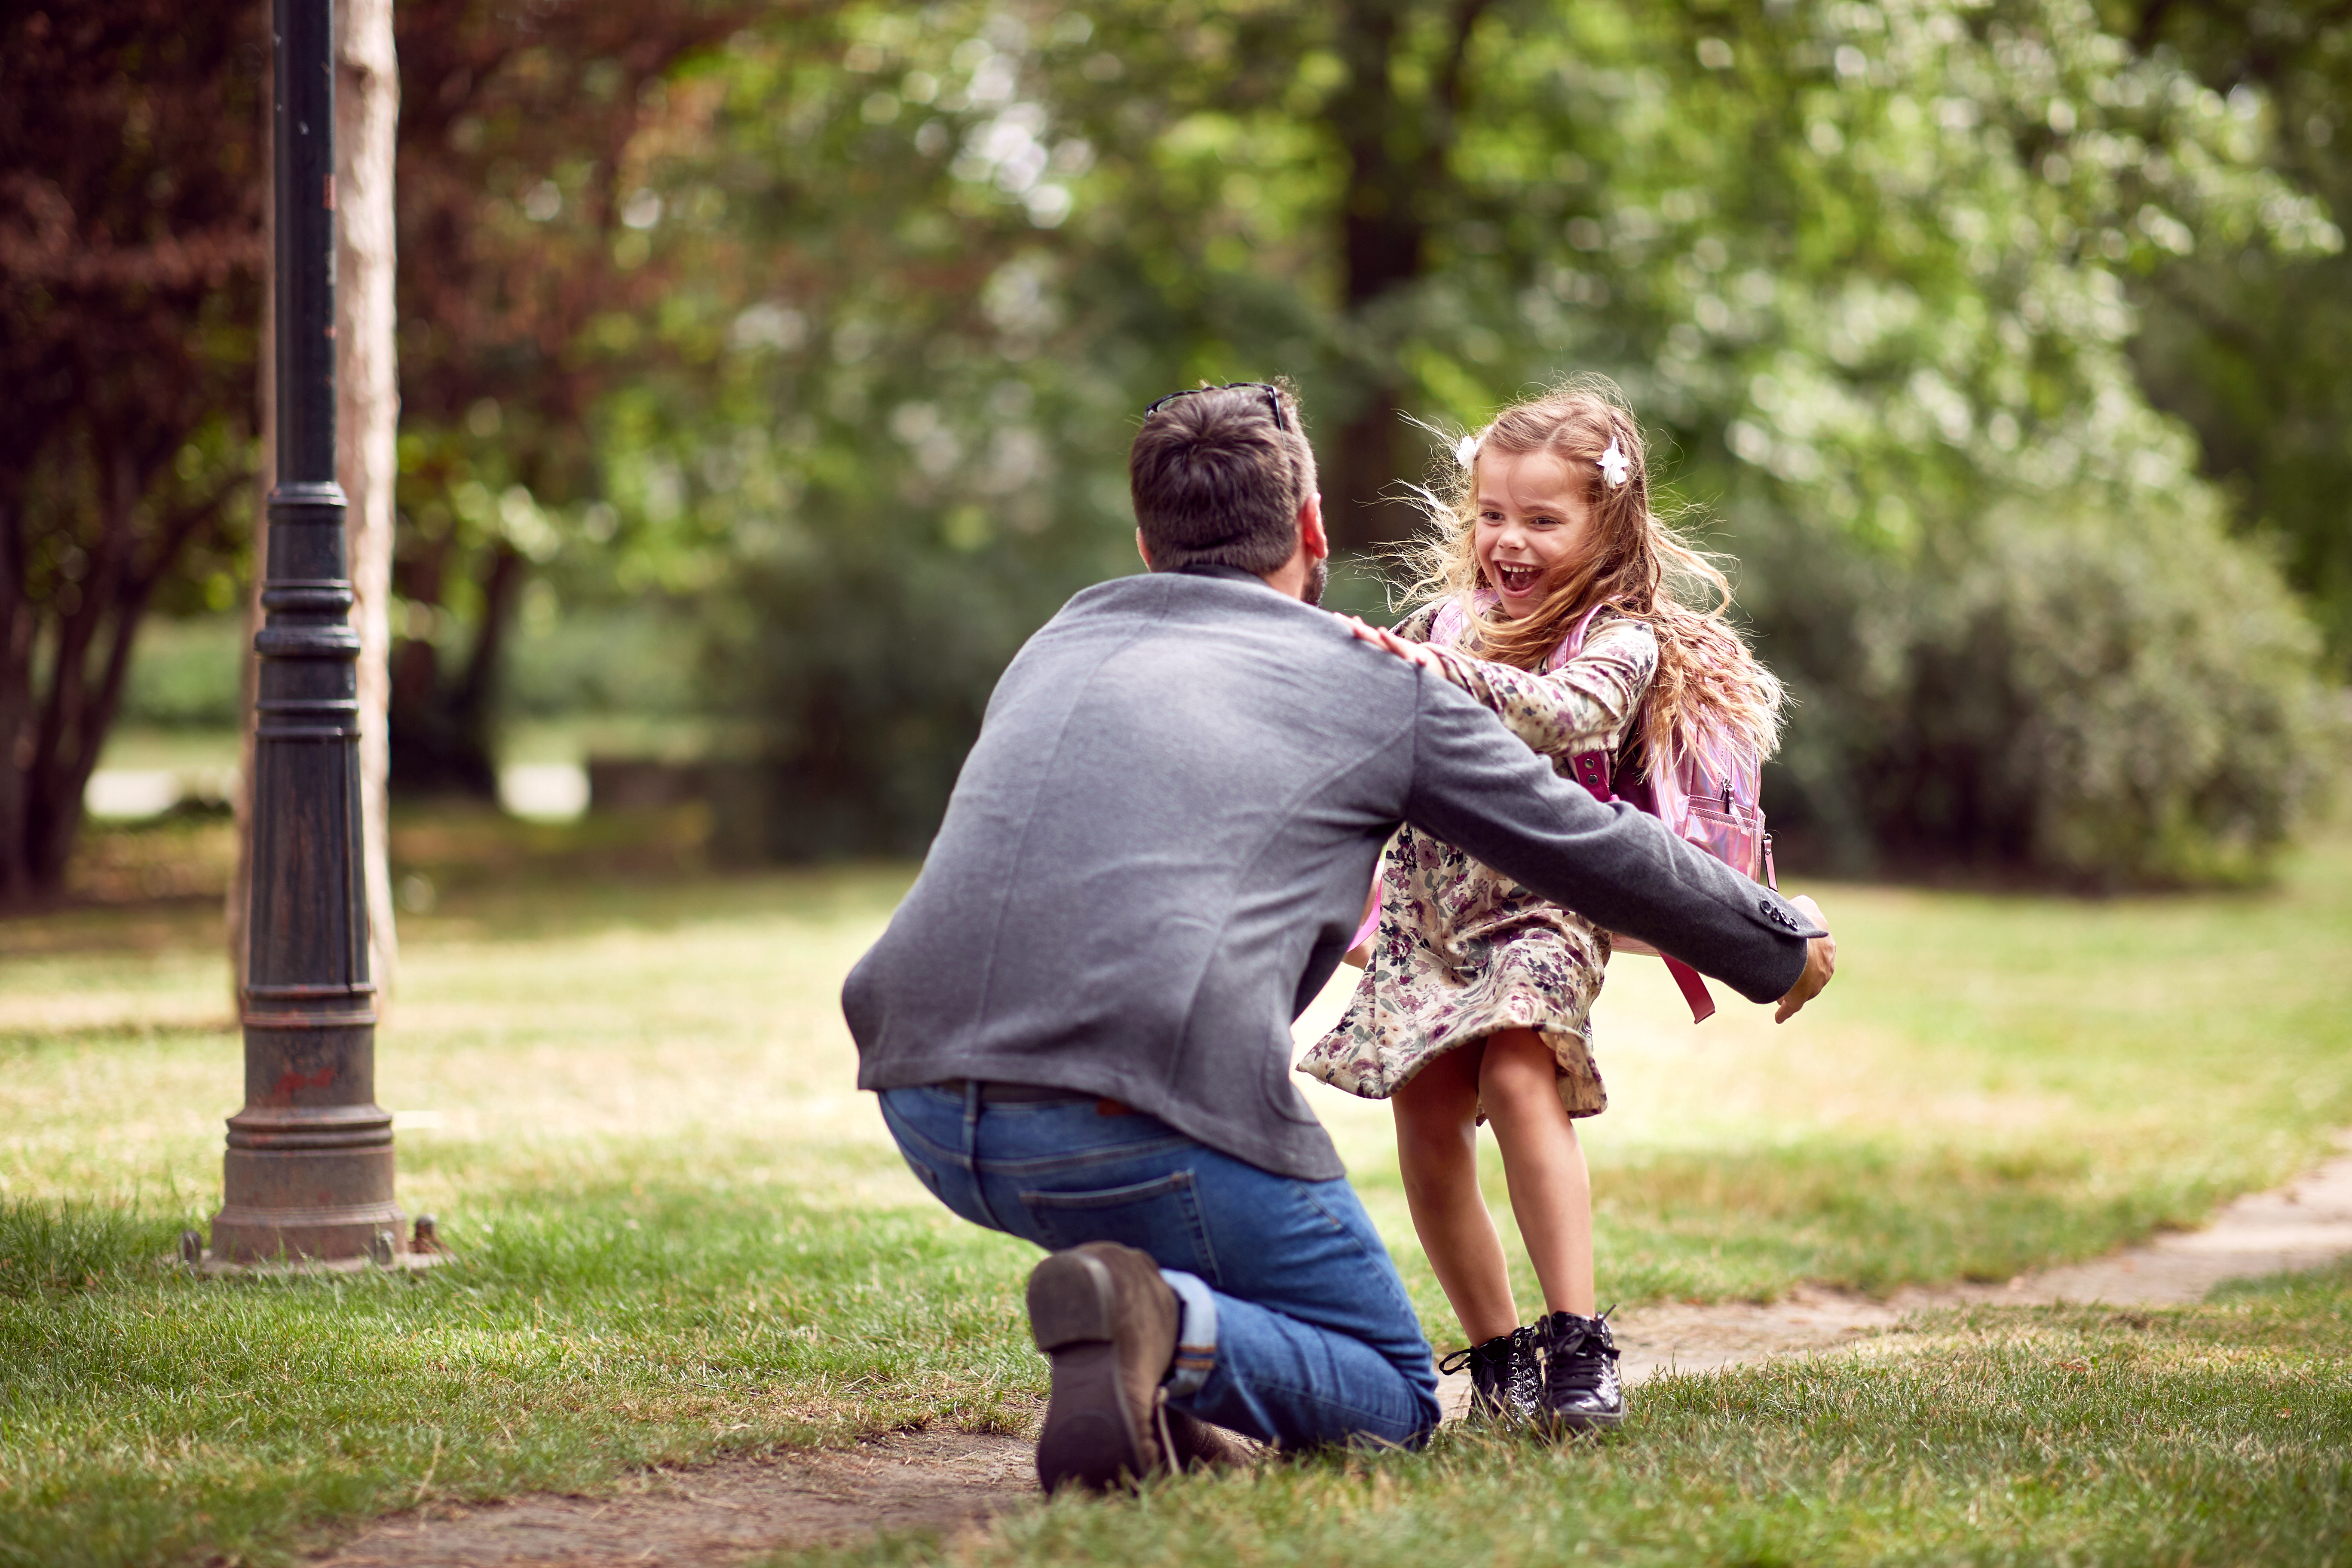 Mann spielt mit einem kleinen Mädchen in einem Park | Quelle: Shutterstock